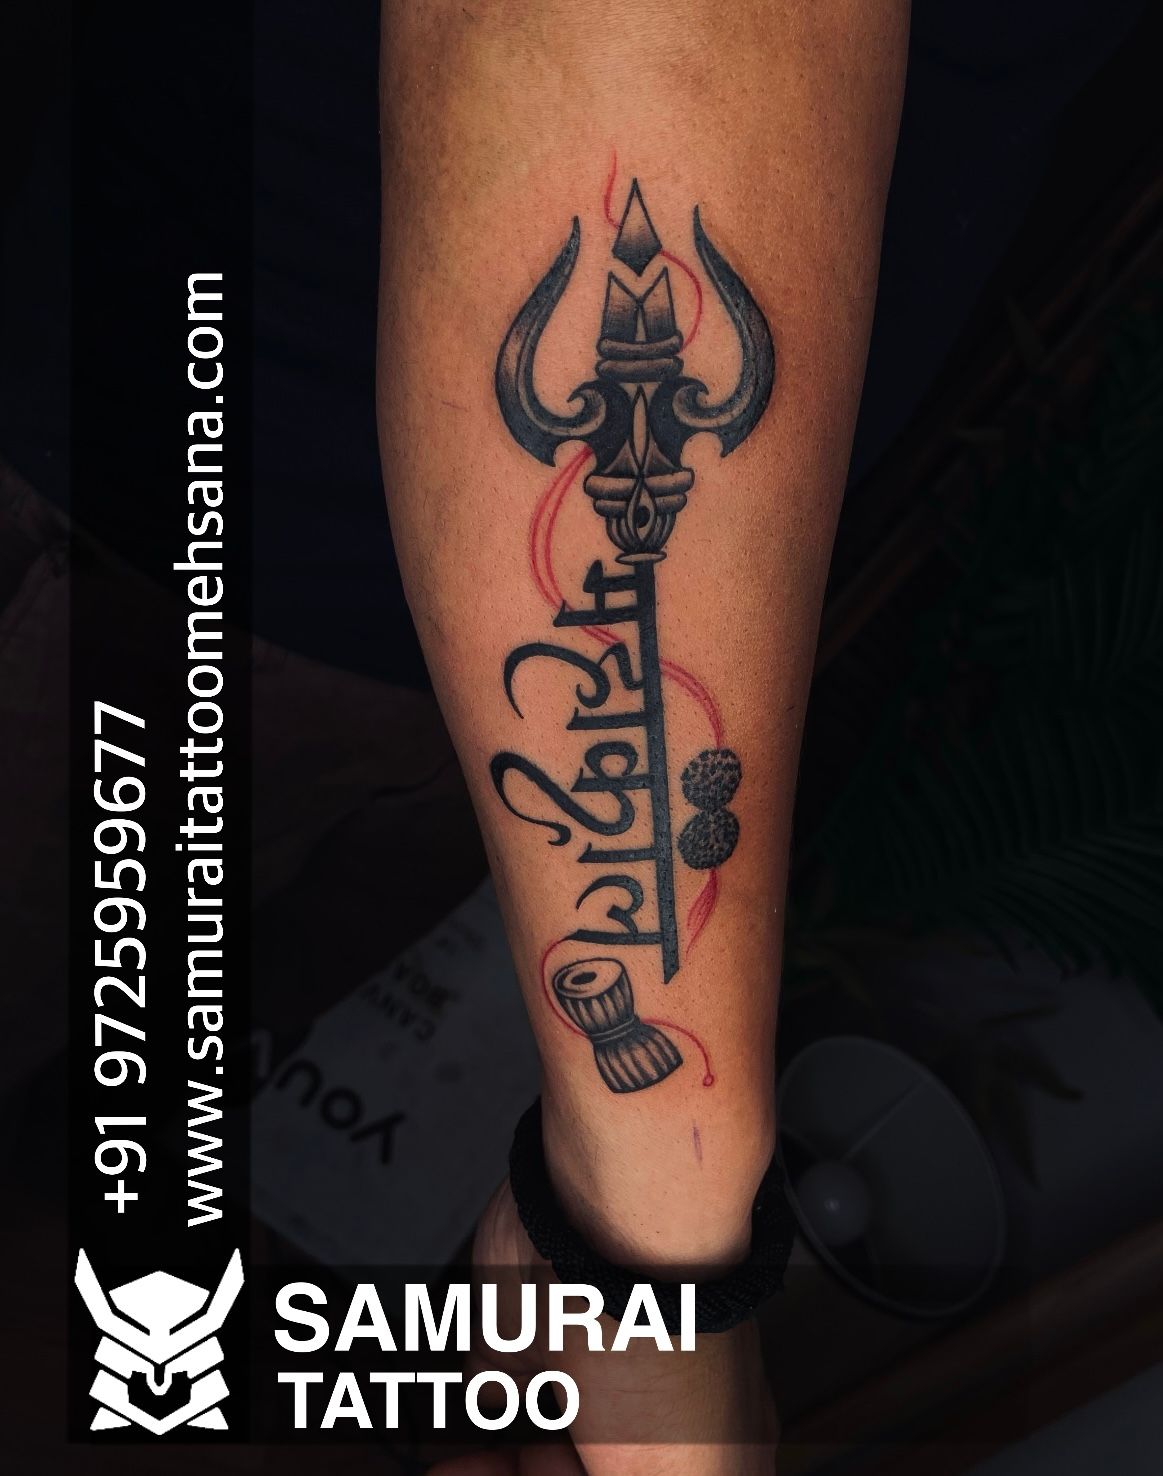 Trishul tattoo om tattoo....... Mahadev tat by Rtattoostudio on DeviantArt